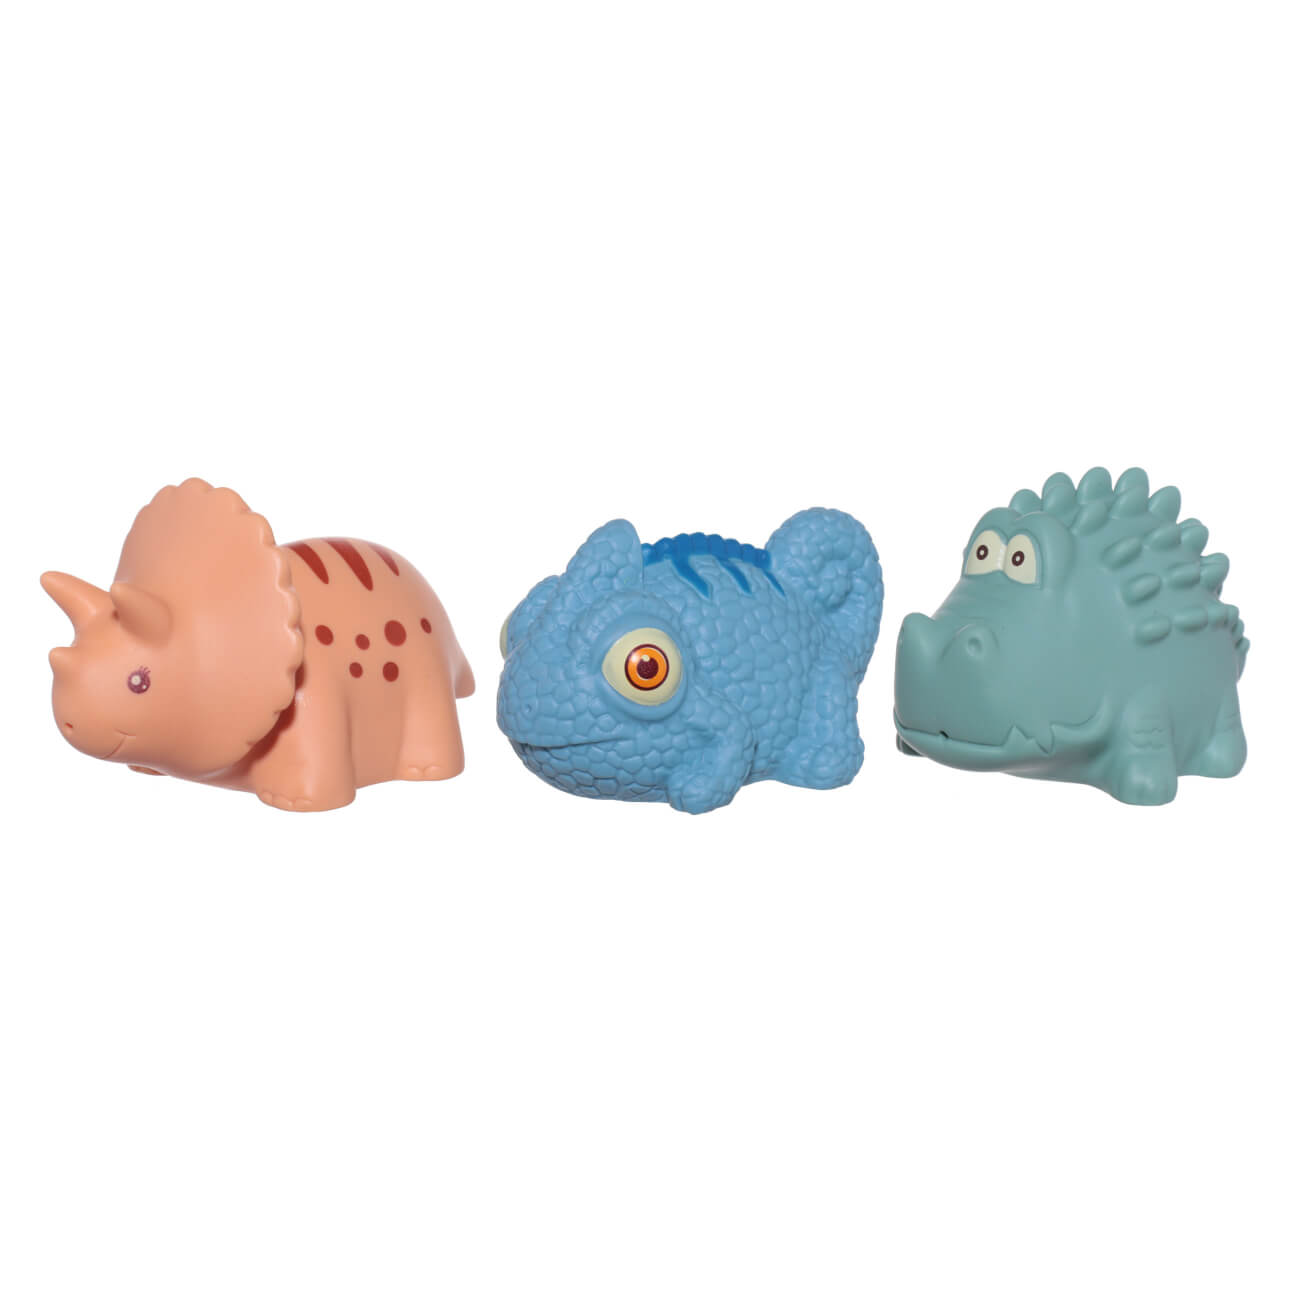 Набор игрушек для купания, 3 пр, ПВХ, цветной, Хамелеон/Динозавр/Крокодил, Kiddy набор игрушек для игры в ванне